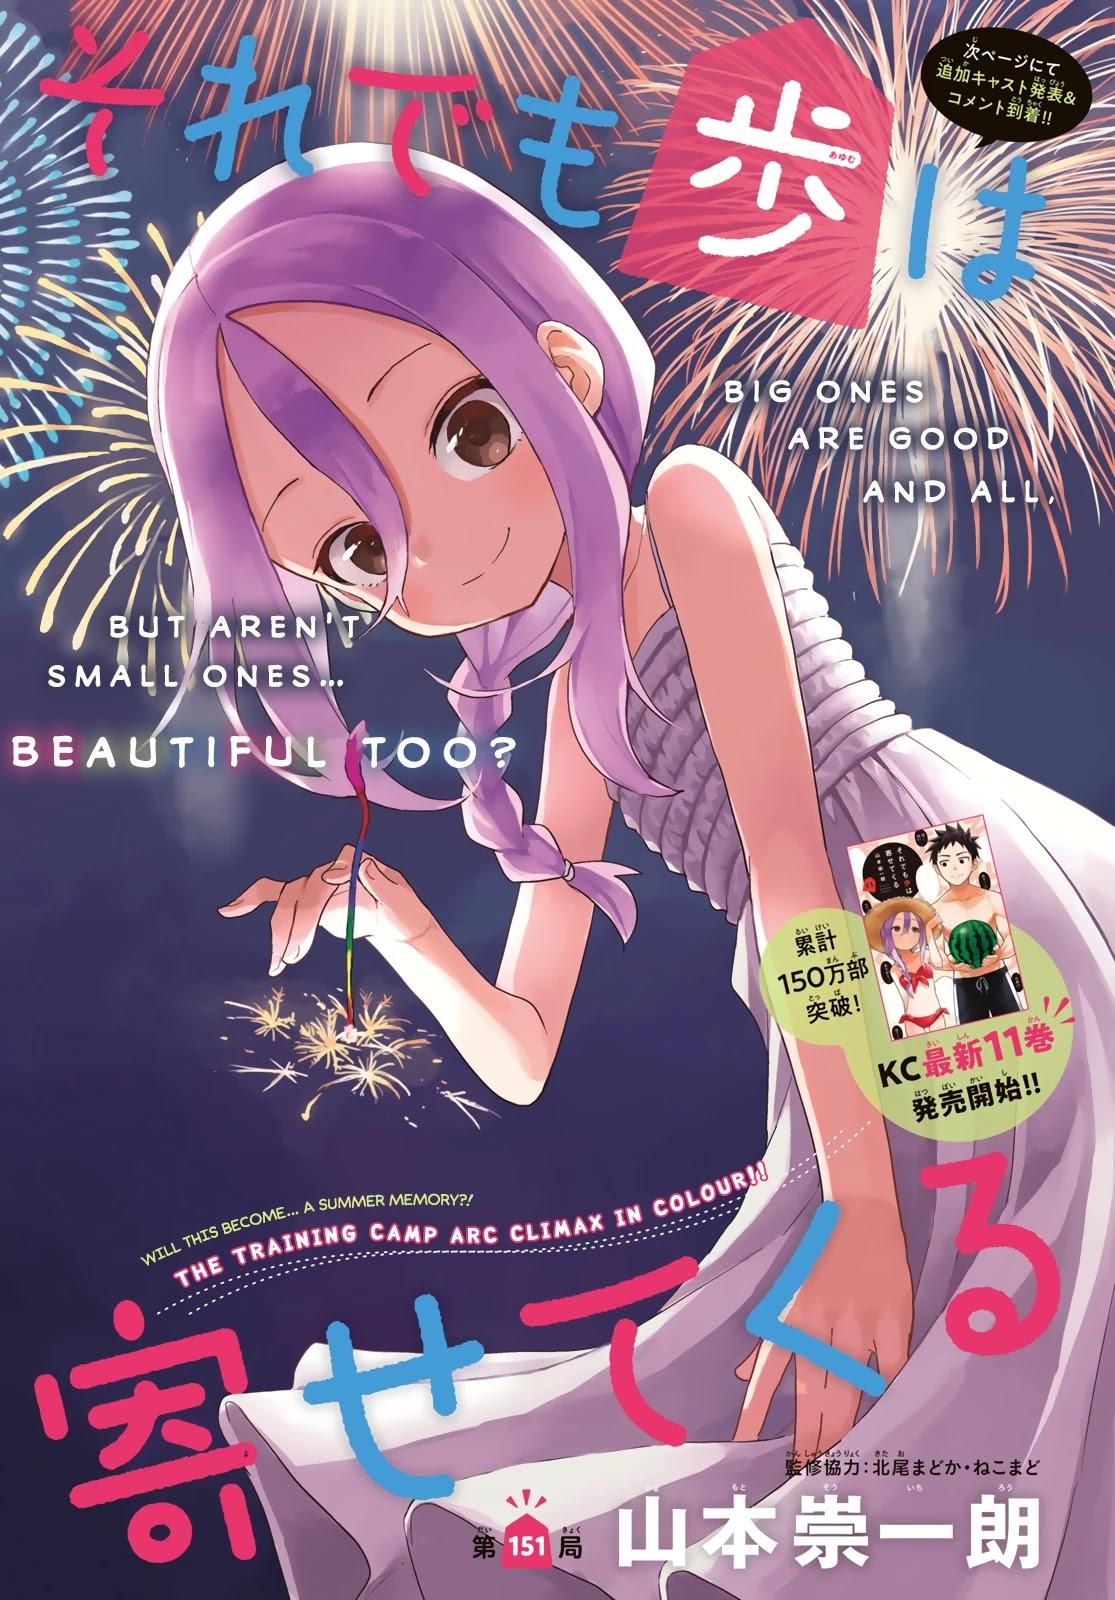 Read Manga Soredemo Ayumu Wa Yosetekuru - Chapter 225